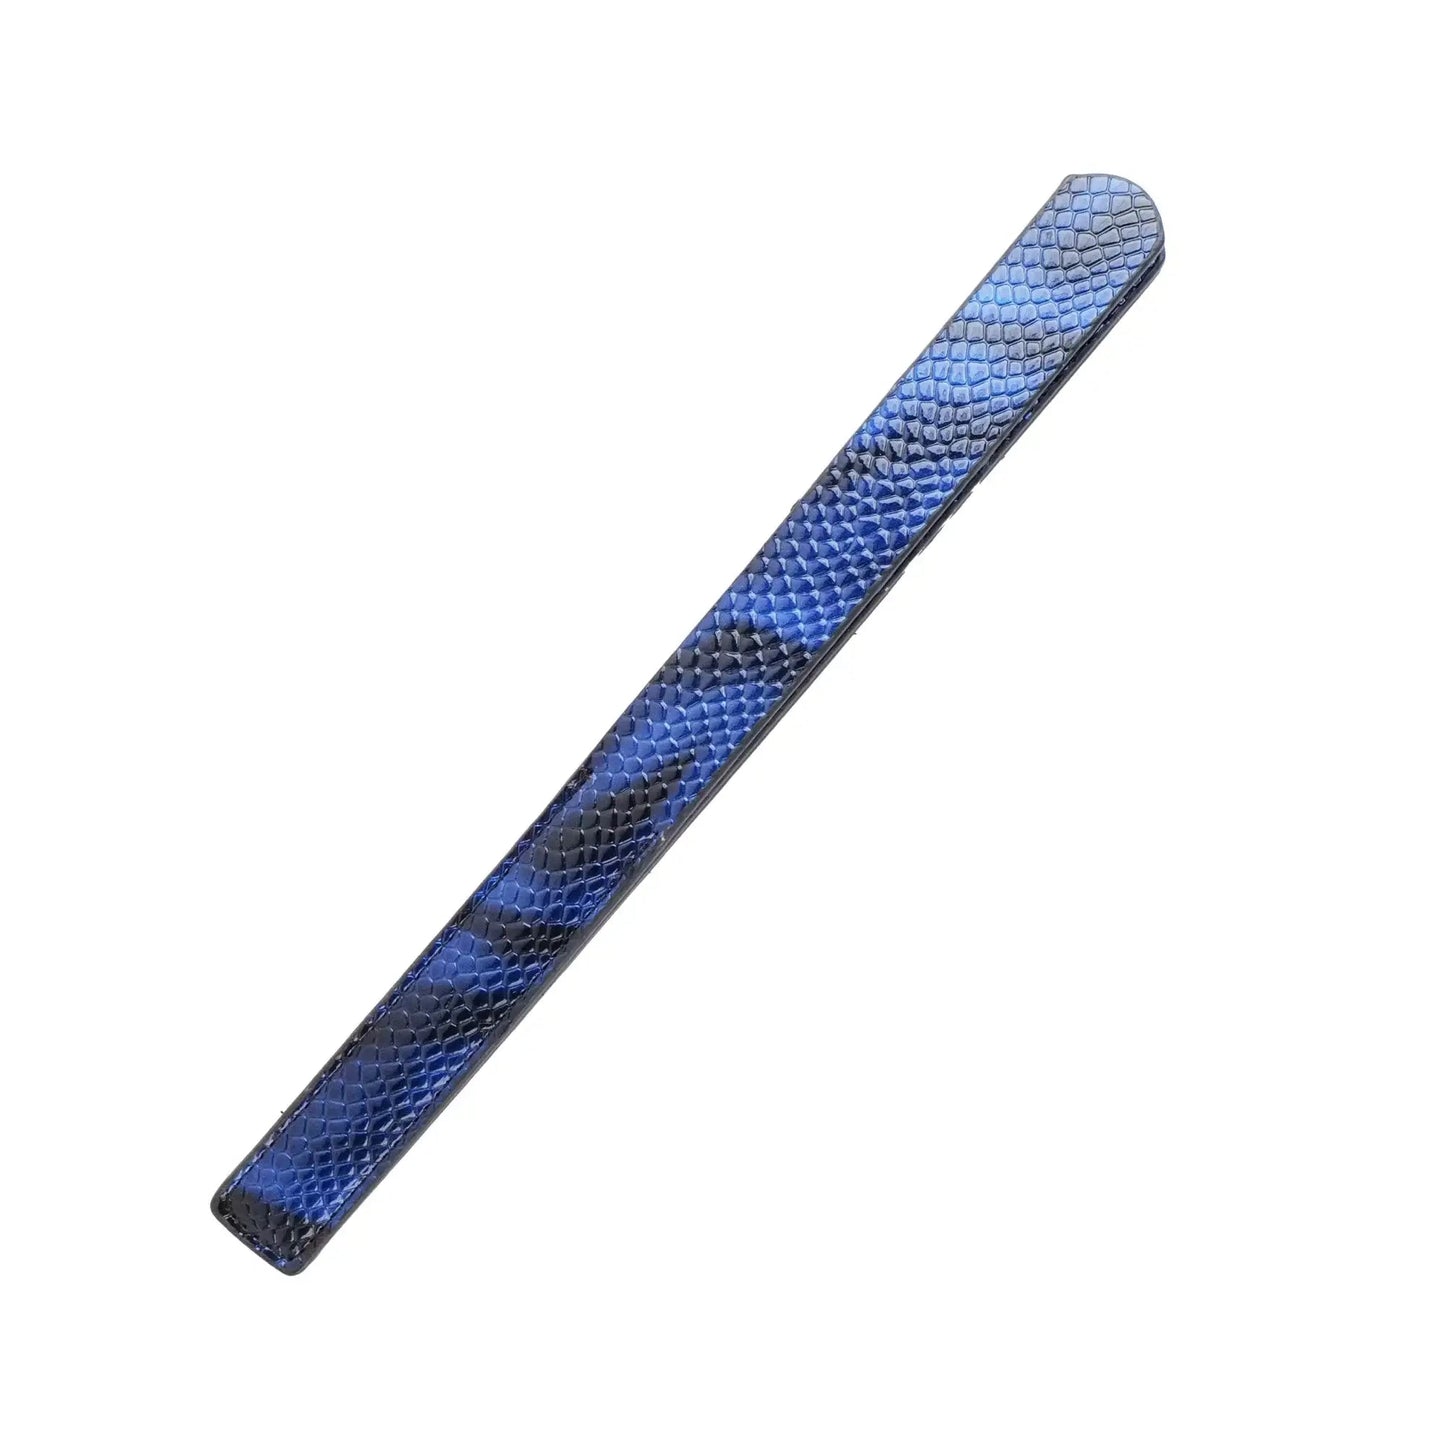 Bondage toy 7-piece blue snakeskin style luxury set